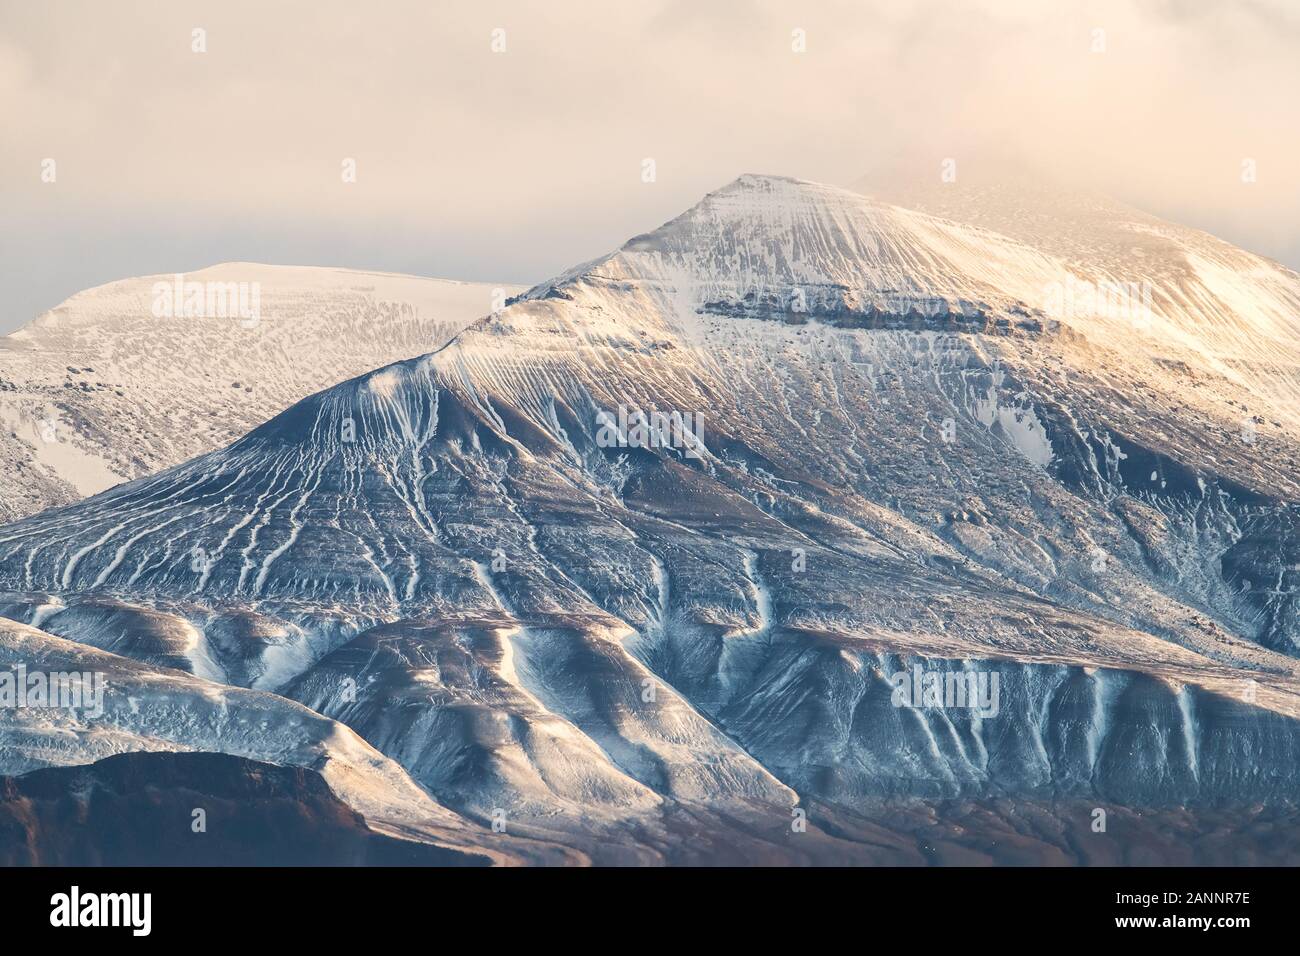 Helle gefroren rocky mountain range im Abendlicht - tolle Landschaft in der Arktis Stockfoto